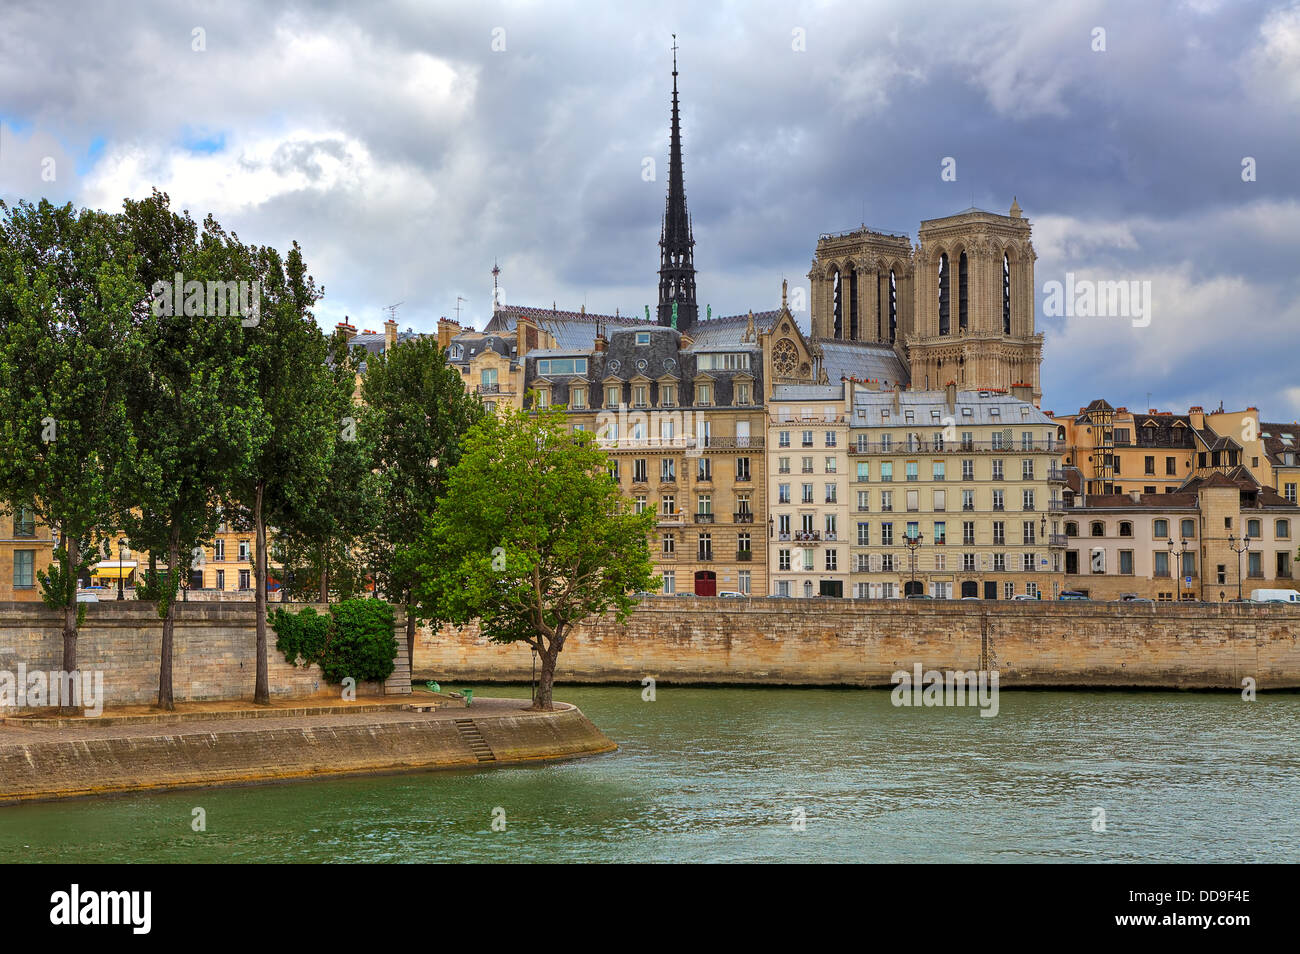 La cathédrale Notre Dame de Paris entre les immeubles parisiens typiques le long de Seine à Paris, France. Banque D'Images